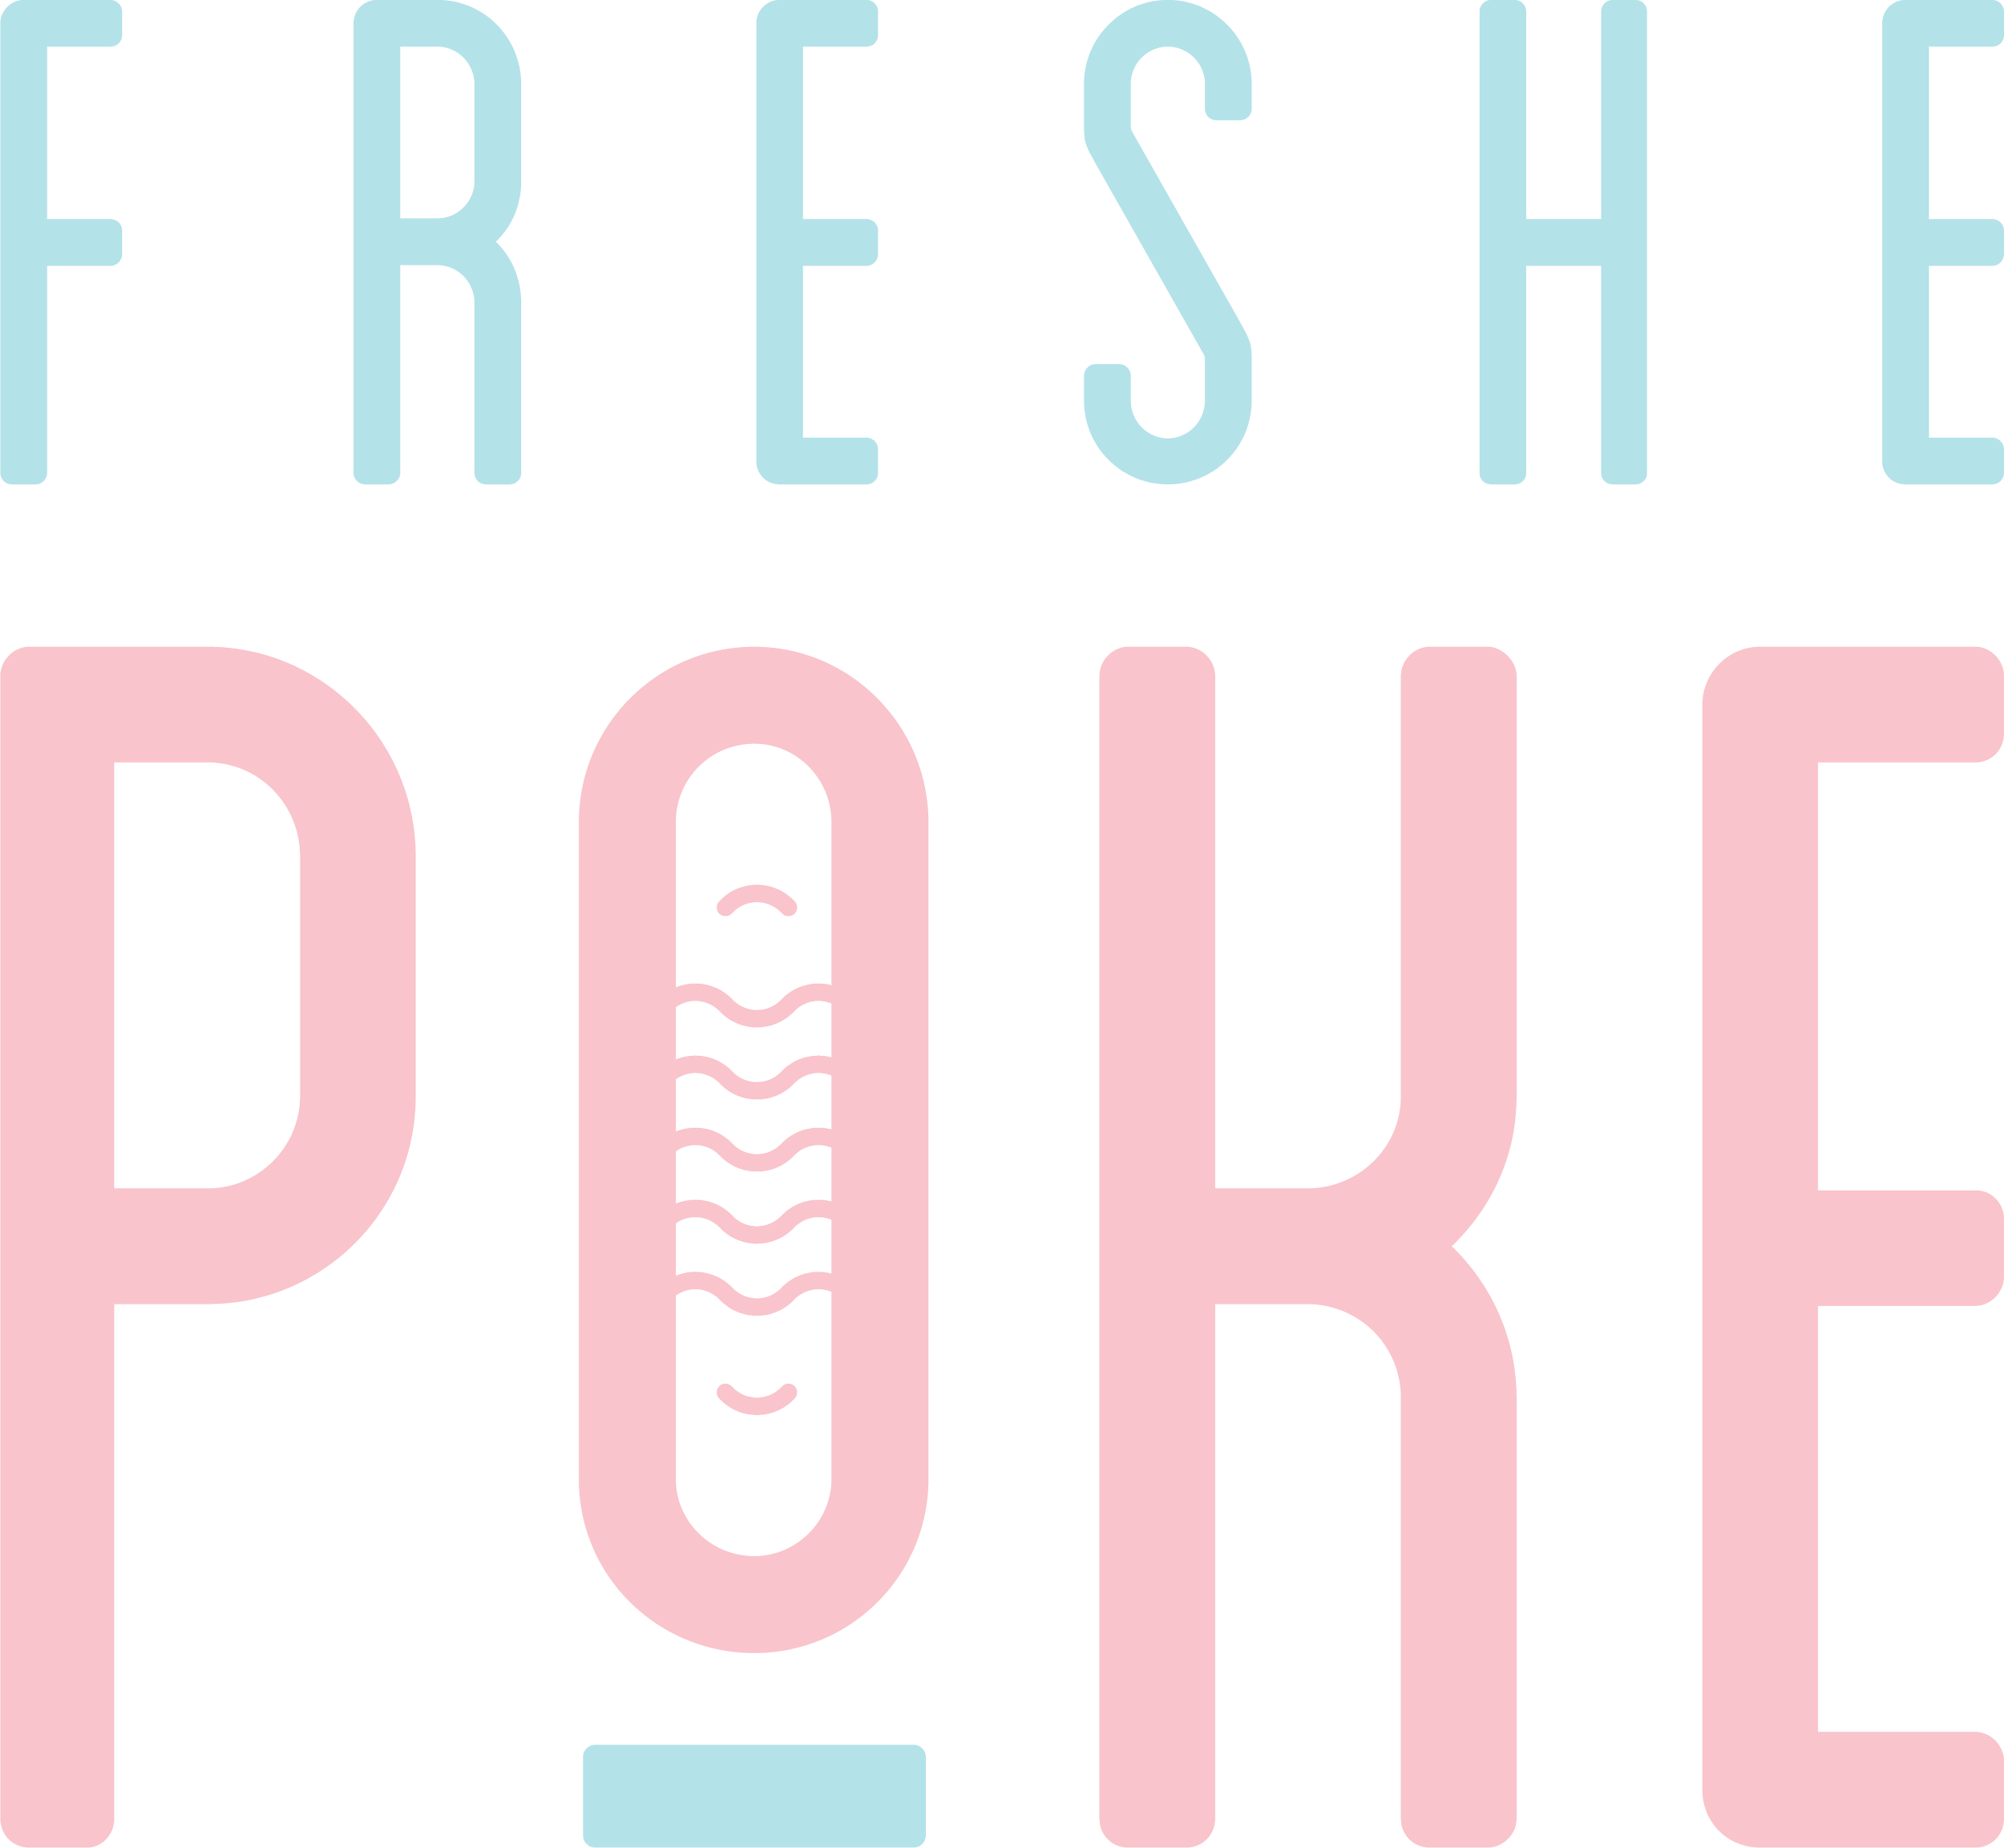 Freshe Poke